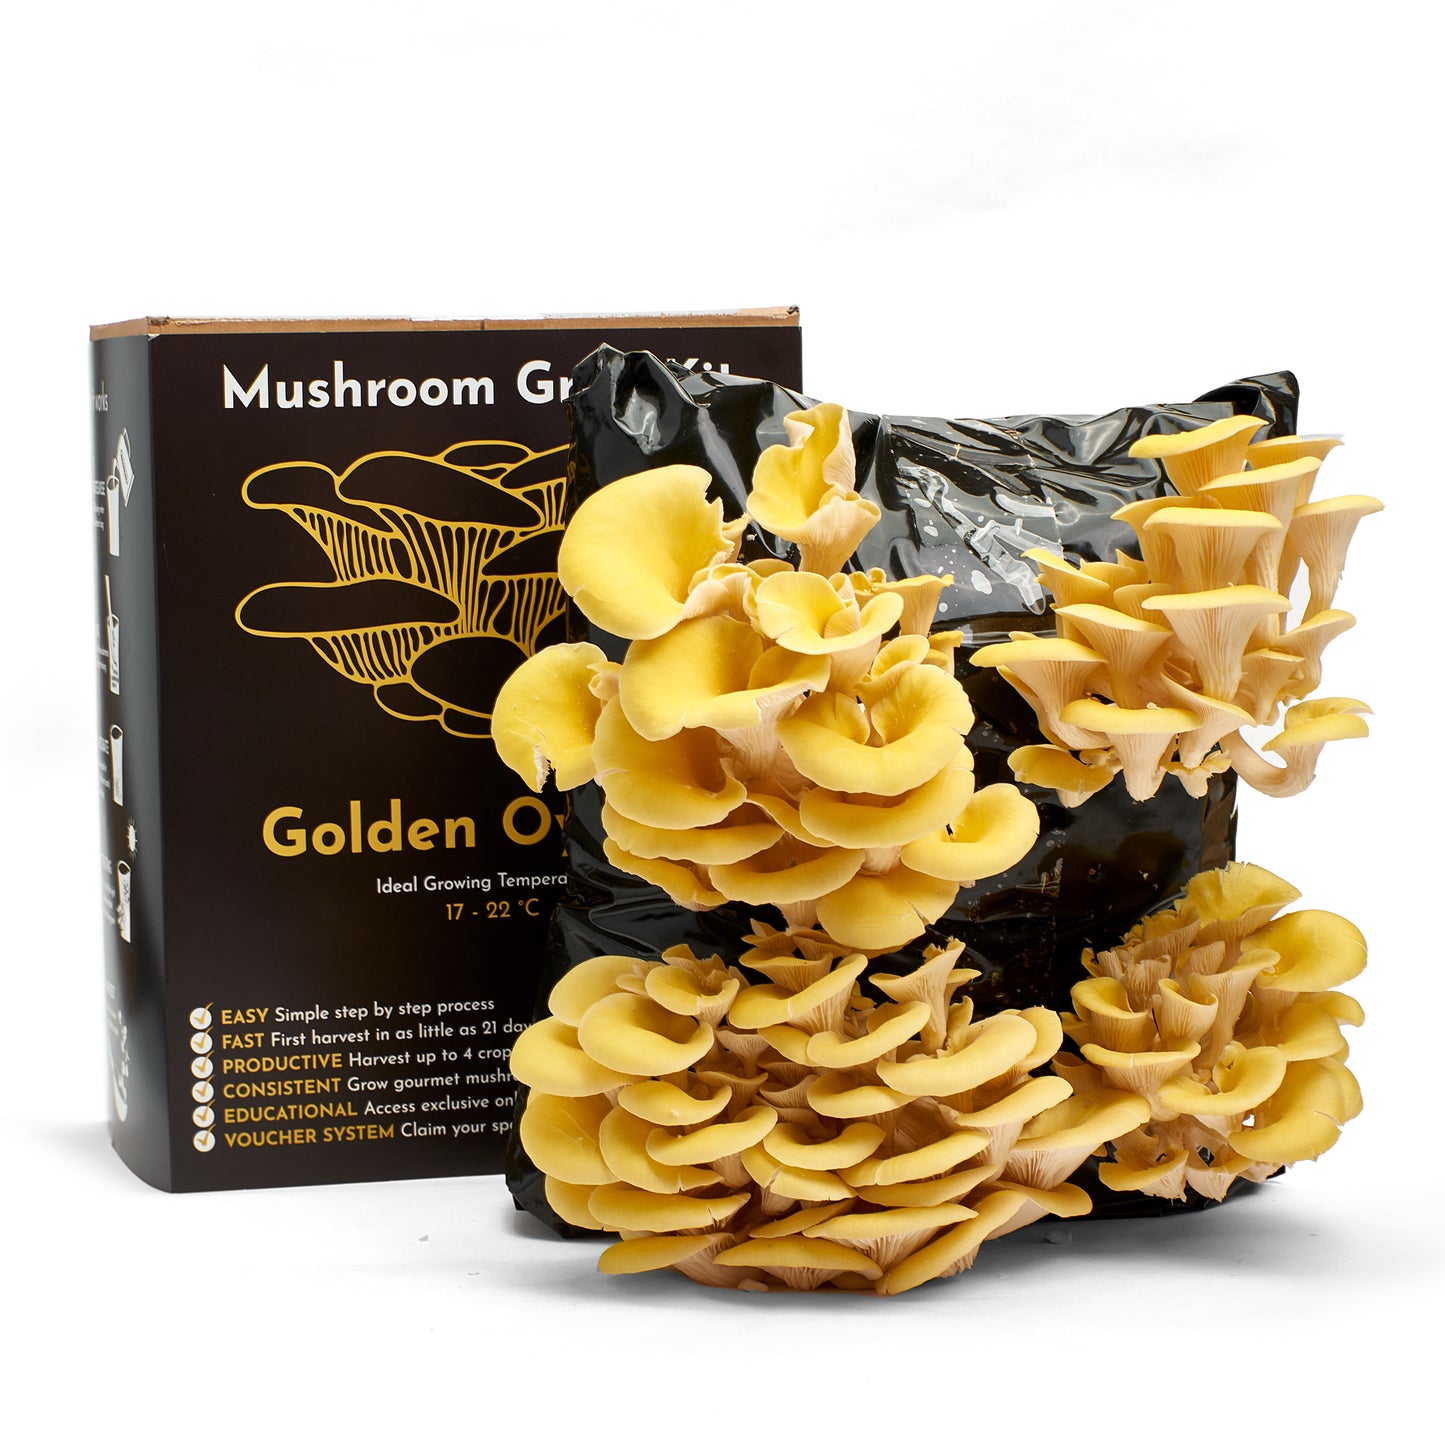 Mushroom Growing Kit - Golden Oyster - Gift Option